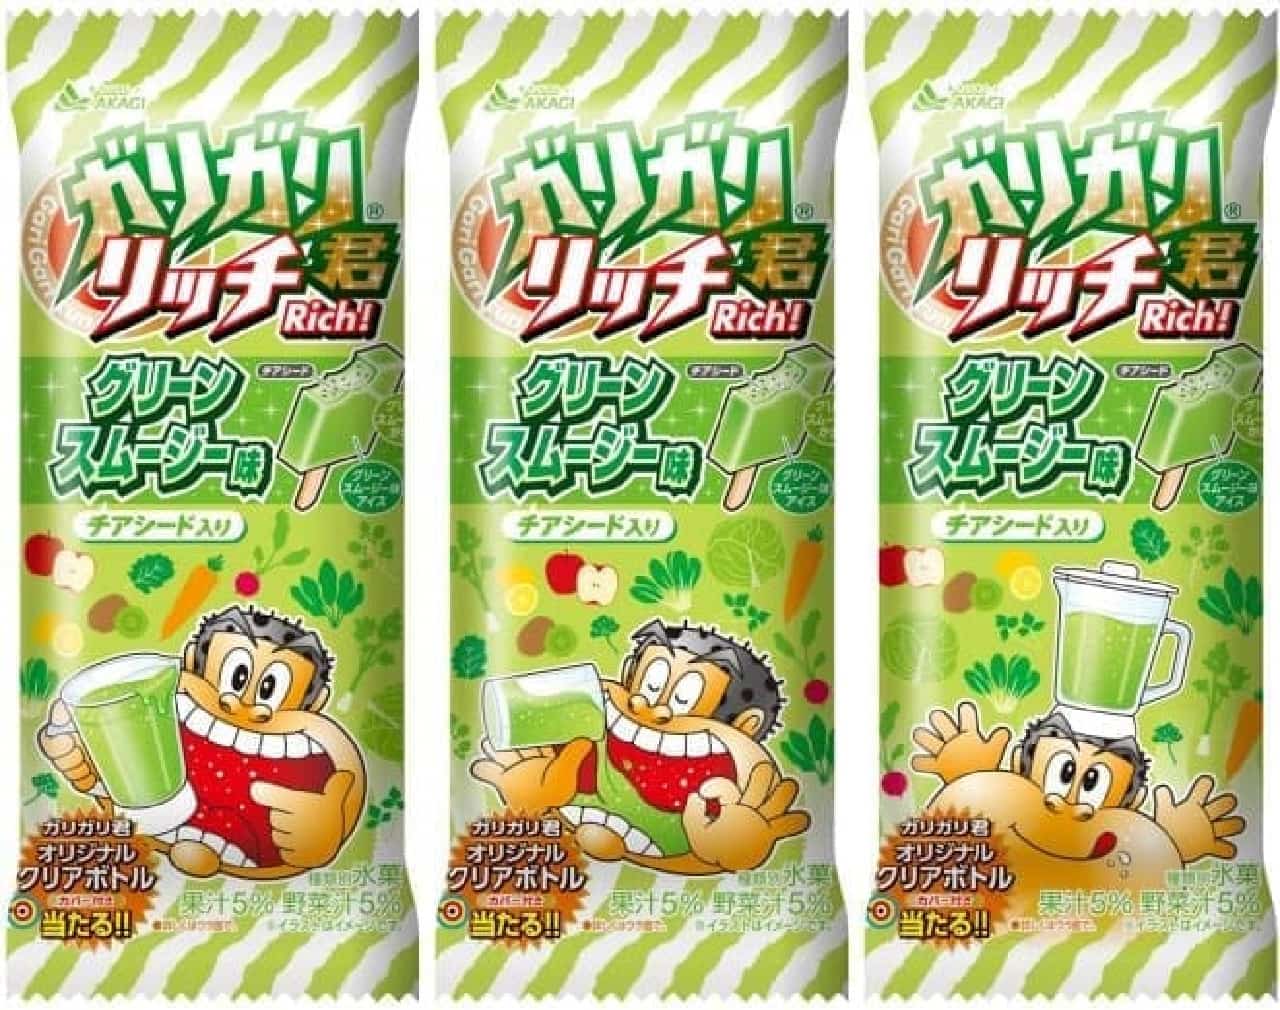 Akagi Nyugyo "Gari-Gari-kun Rich Green Smoothie Flavor"